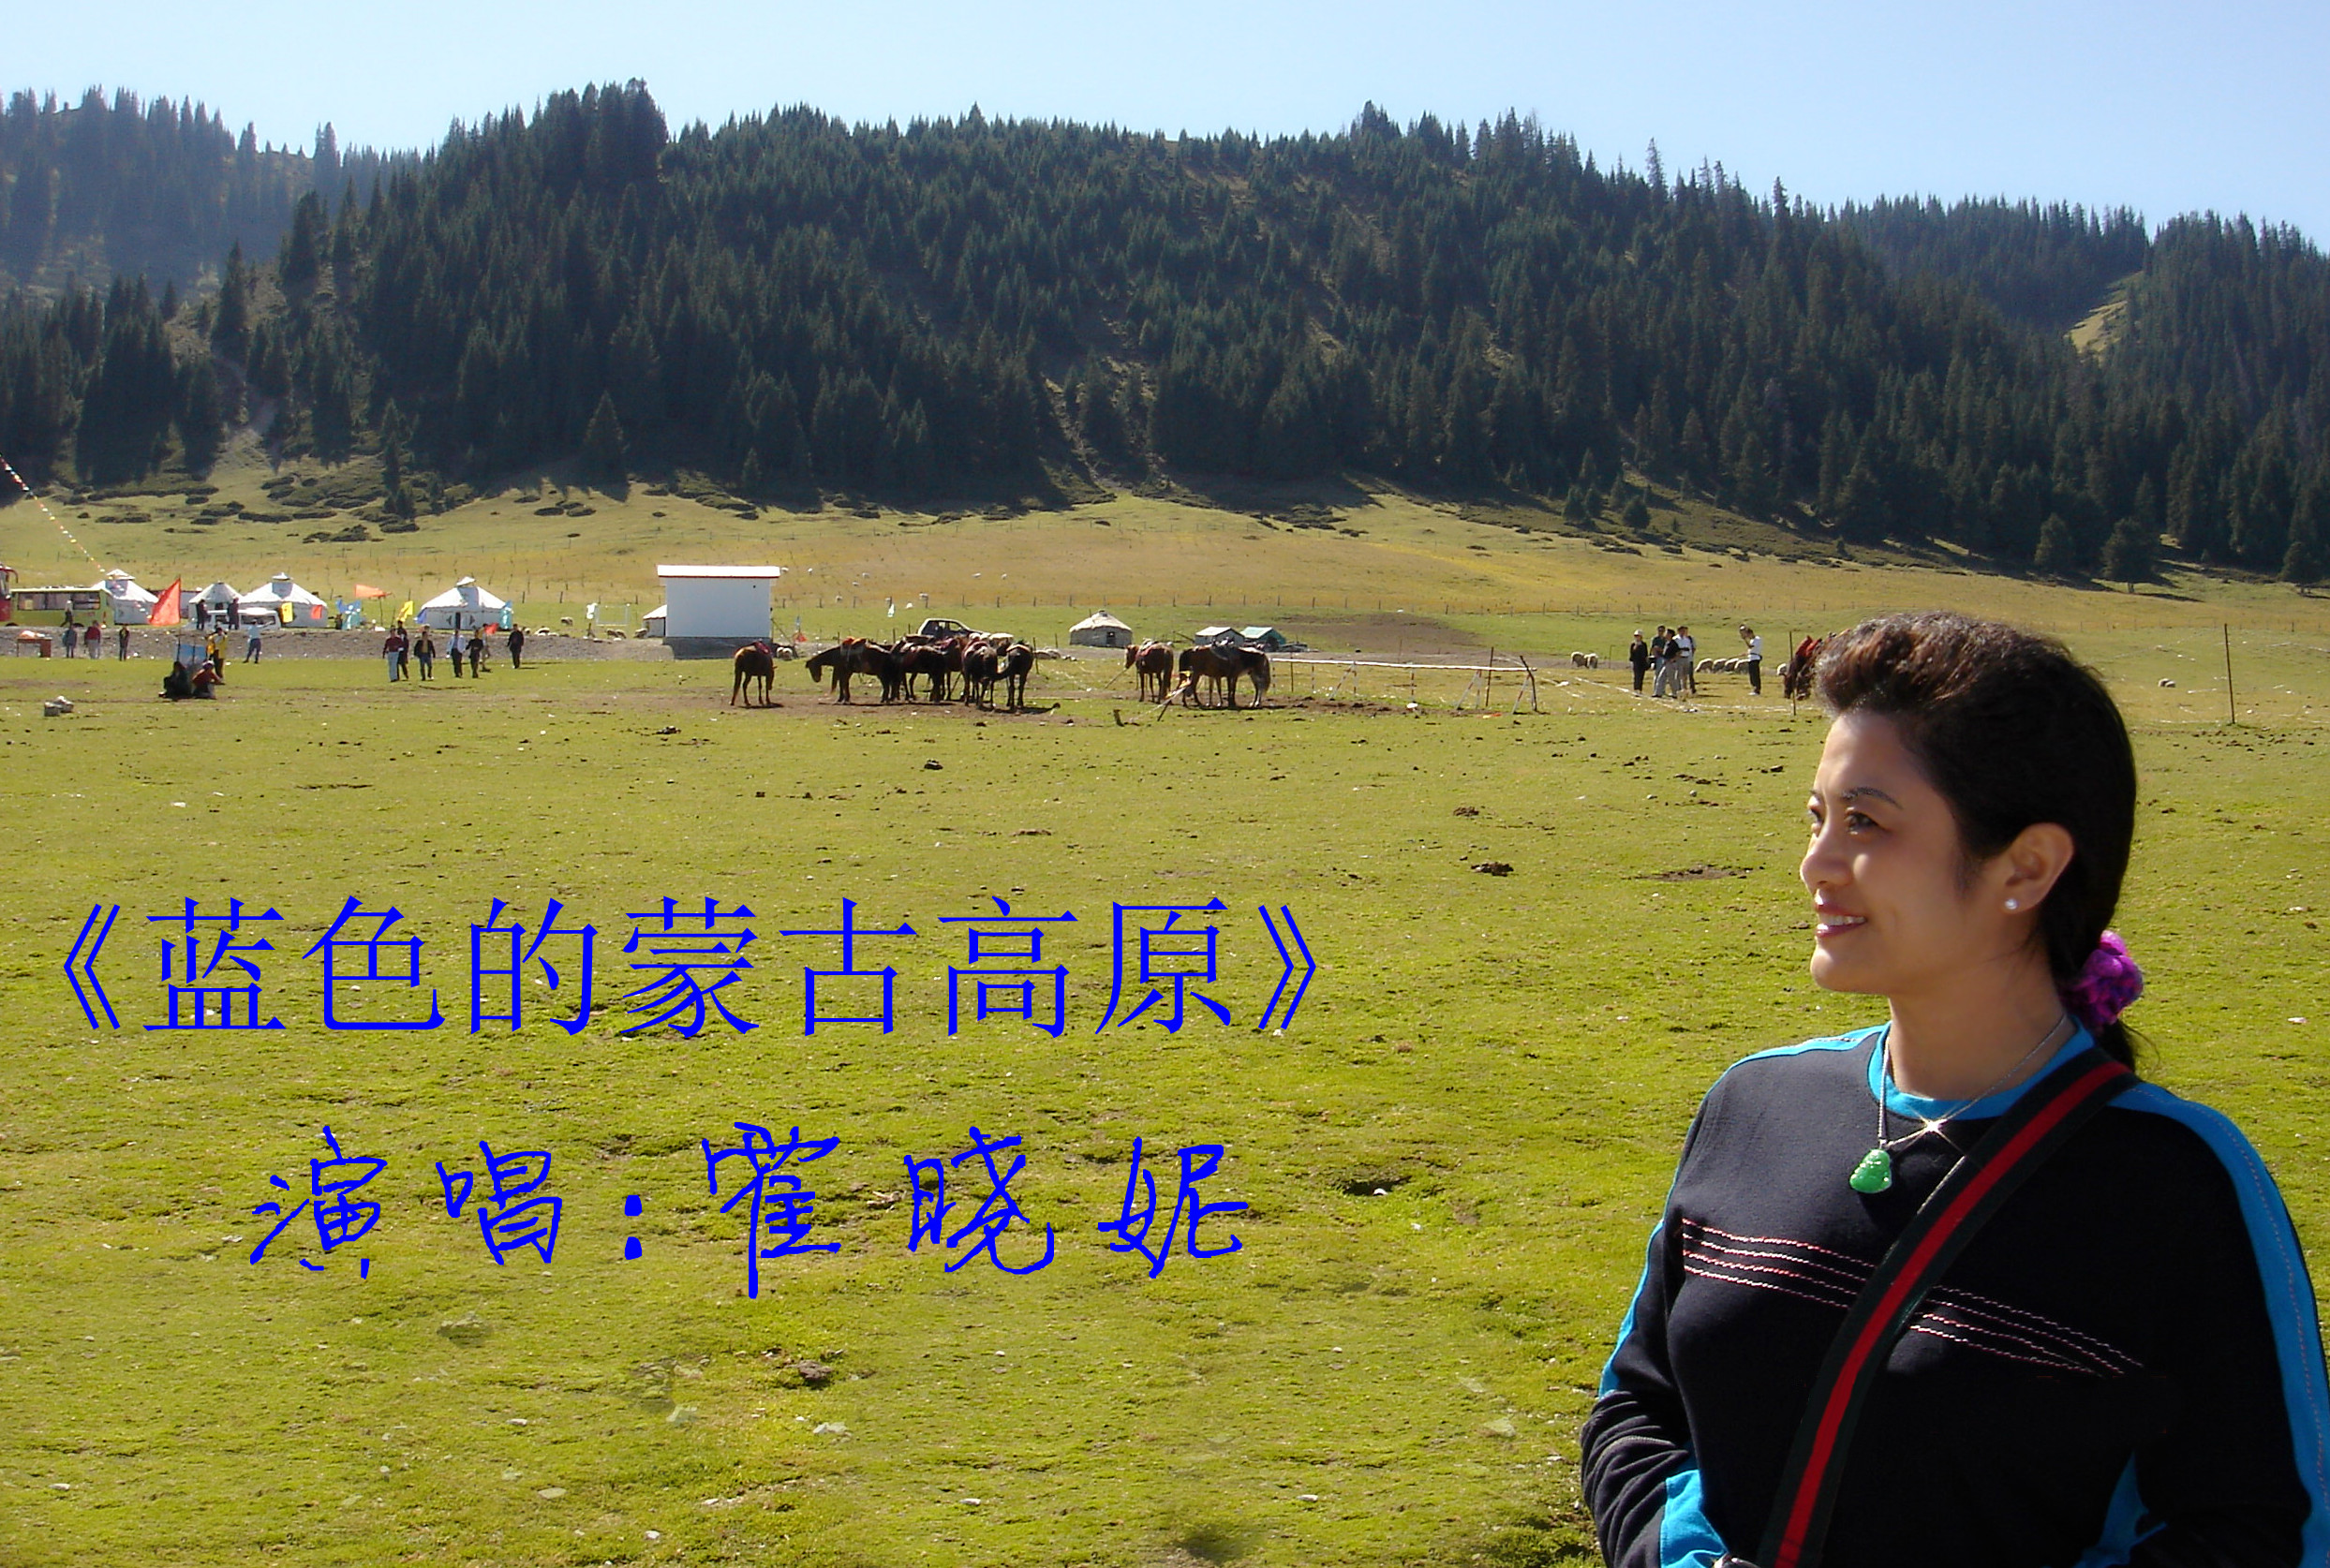 蓝色的蒙古高原